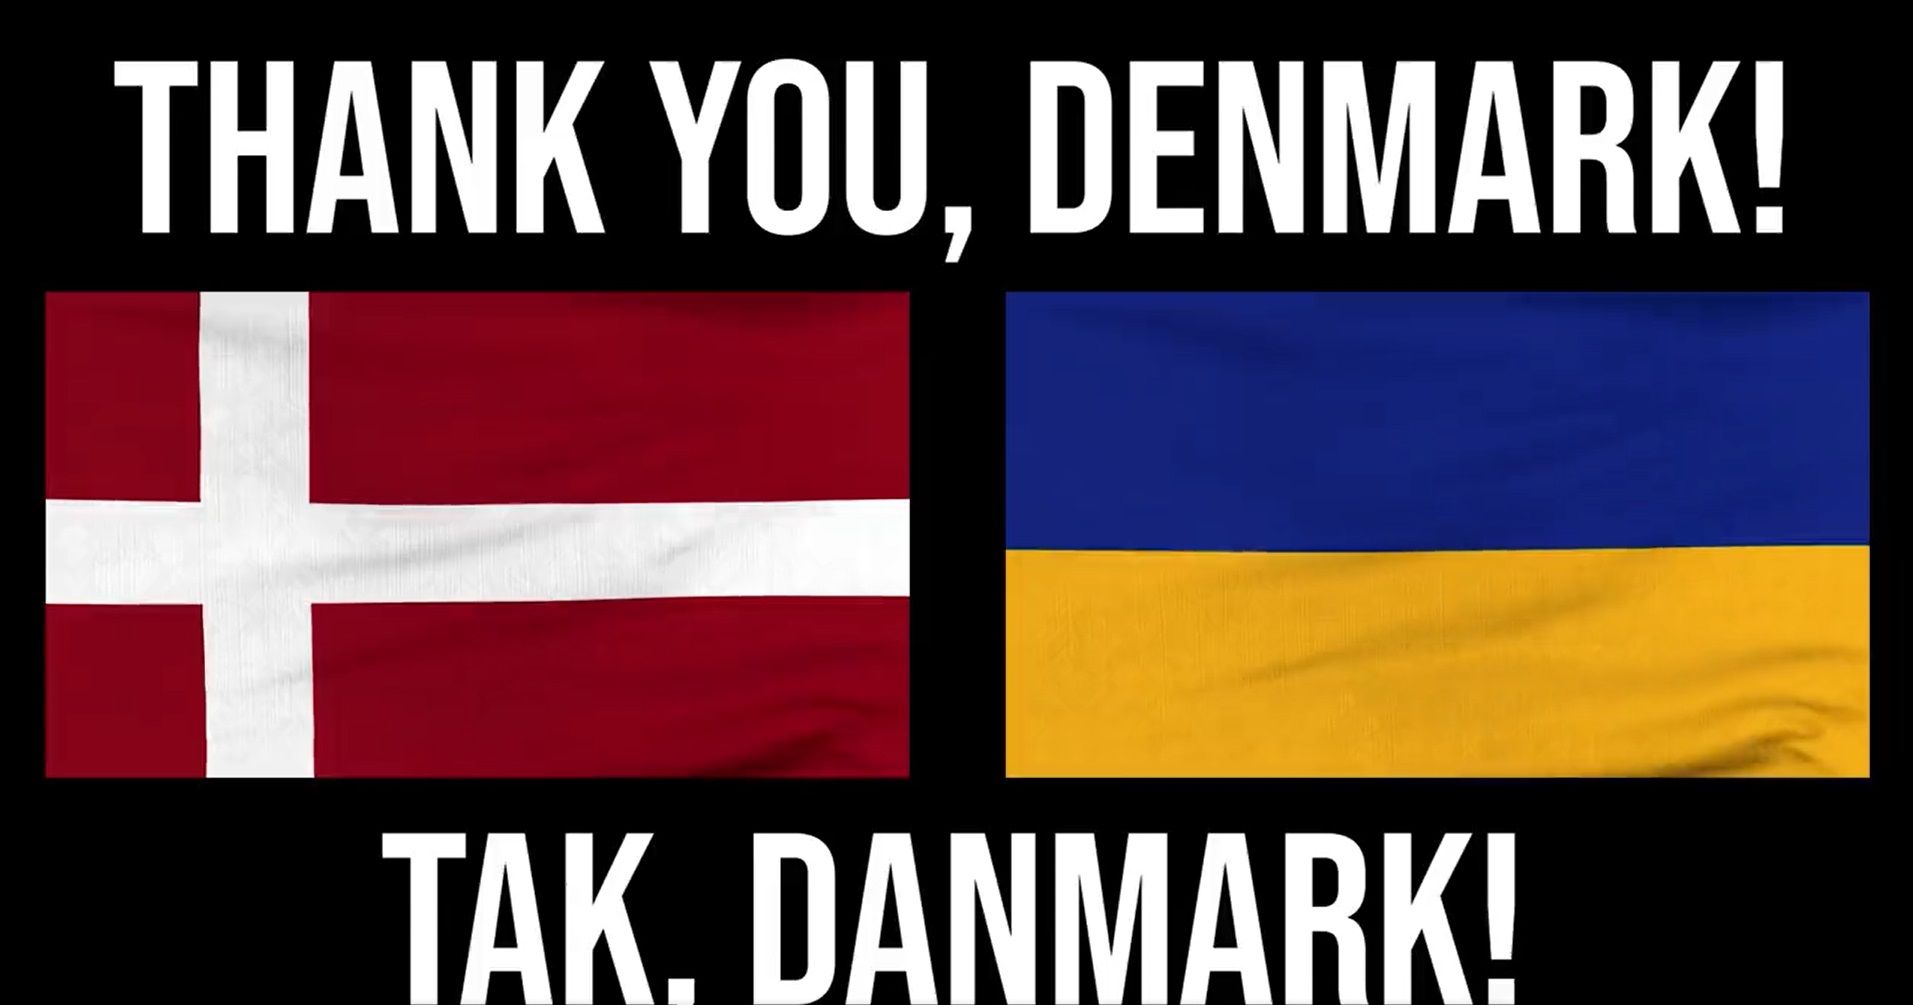 Ukraine thanks Denmark for the support